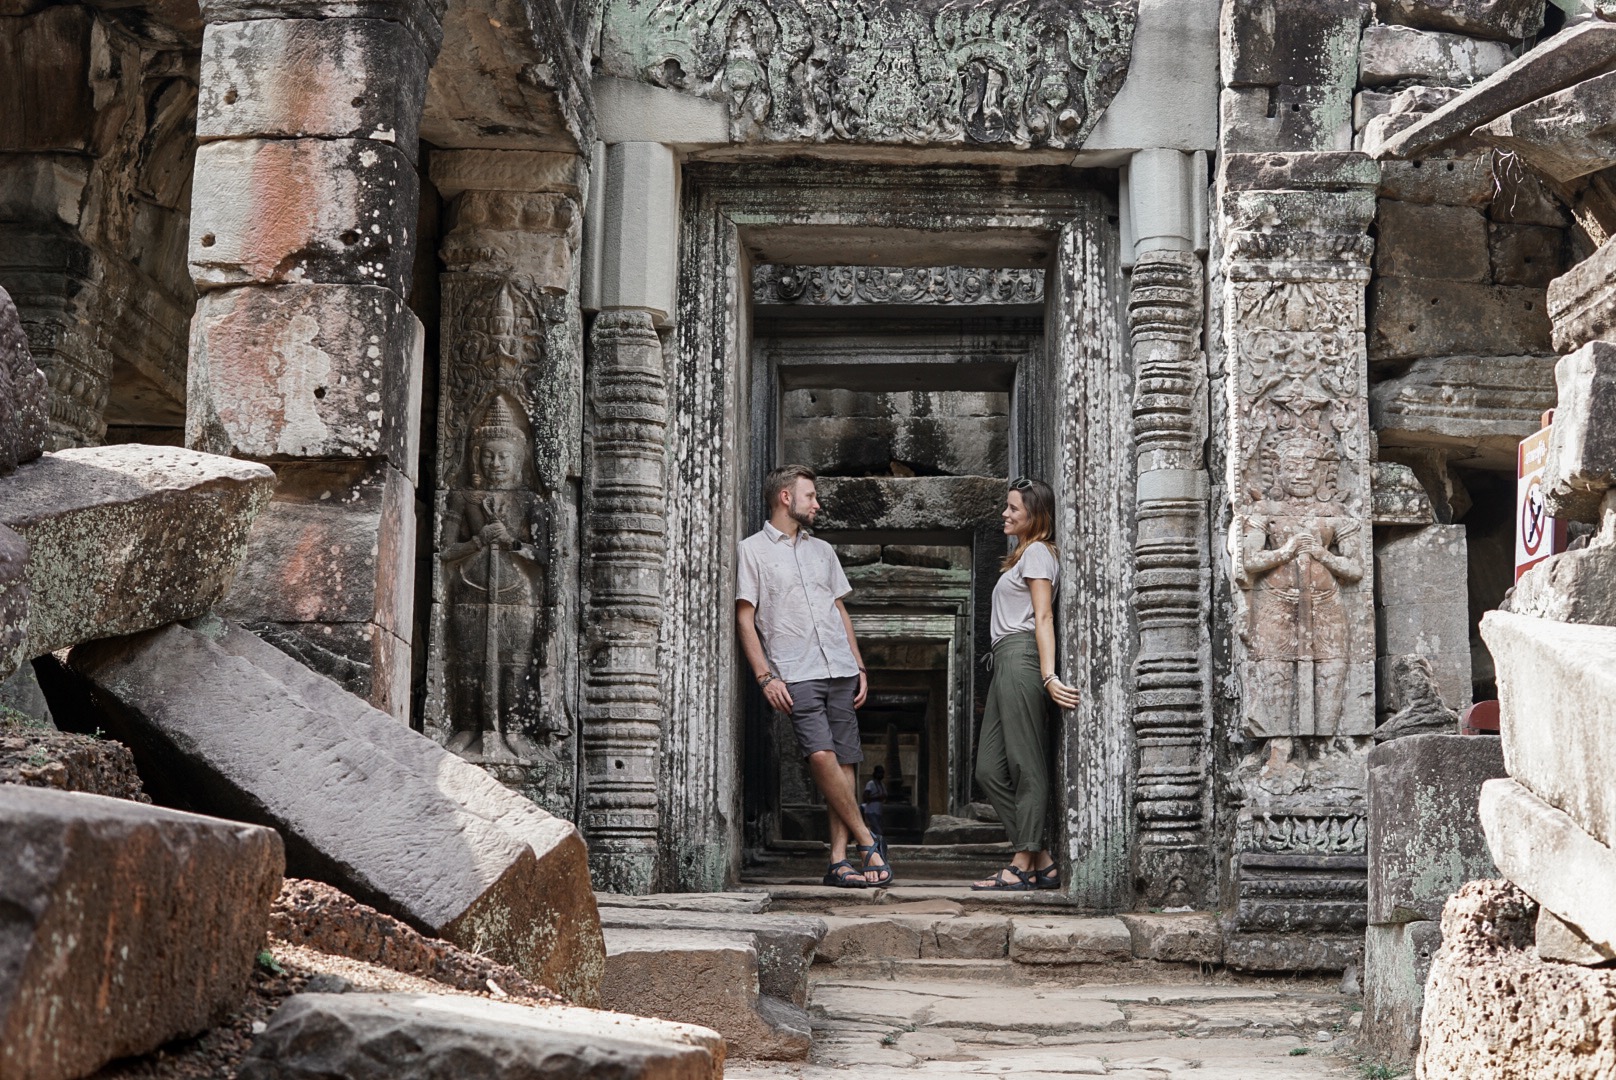 cambodia, temples